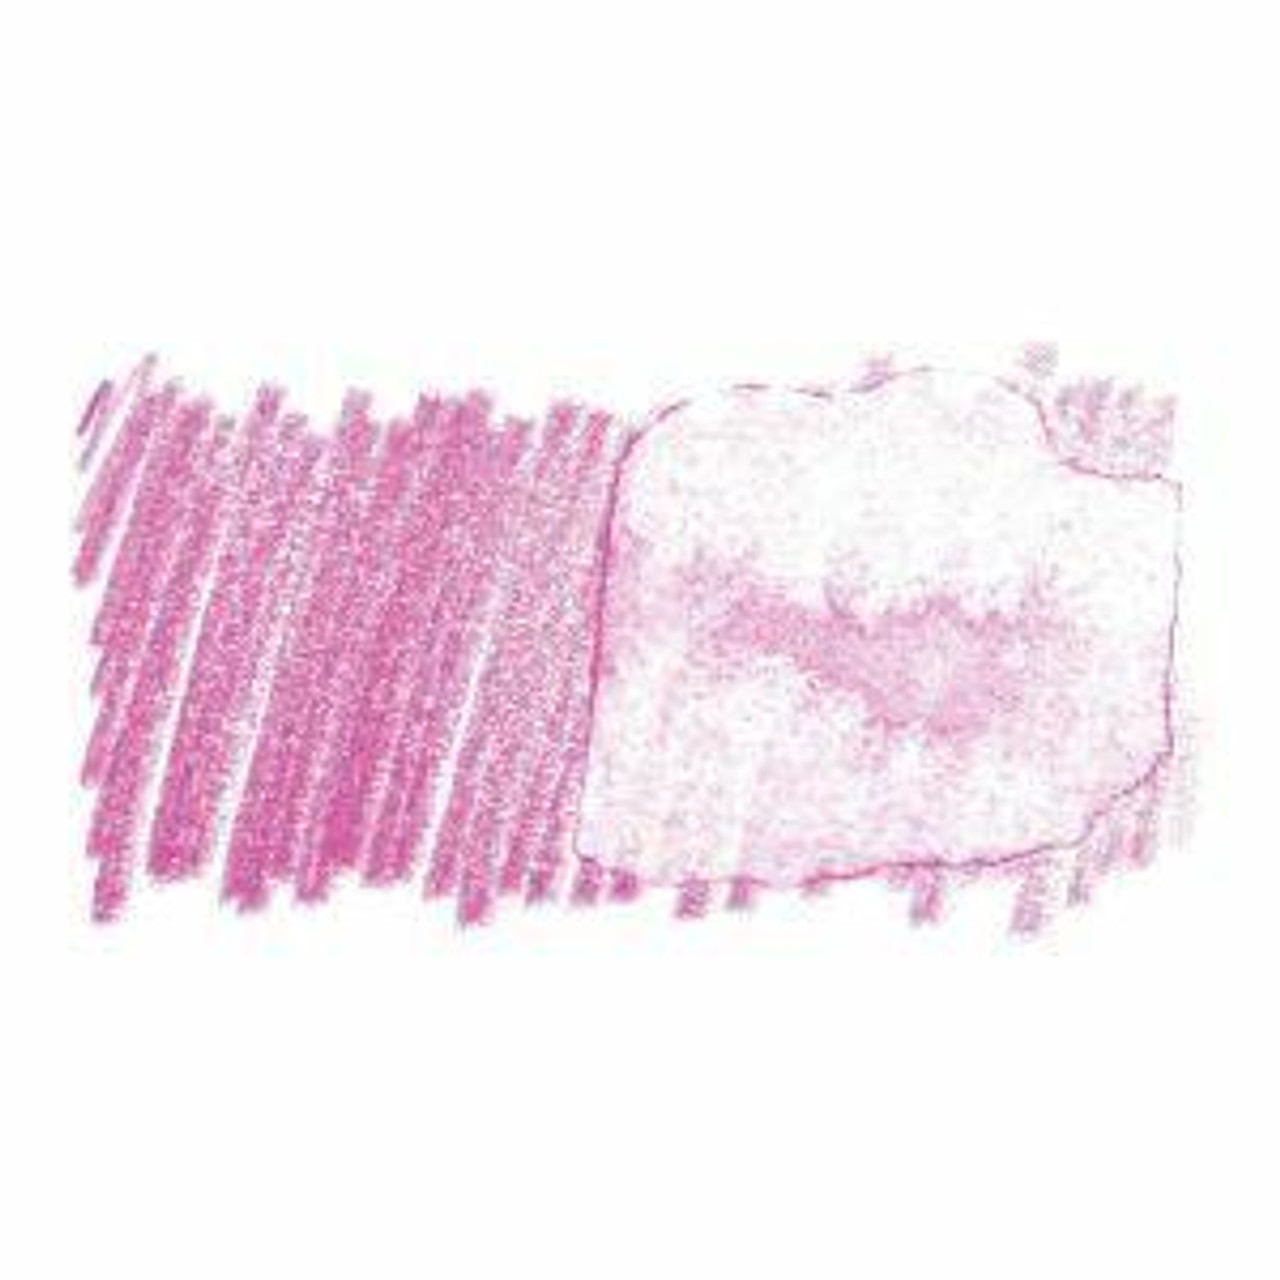 Faber Castell : Albrecht Durer Watercolor Pencil : Light Purple Pink